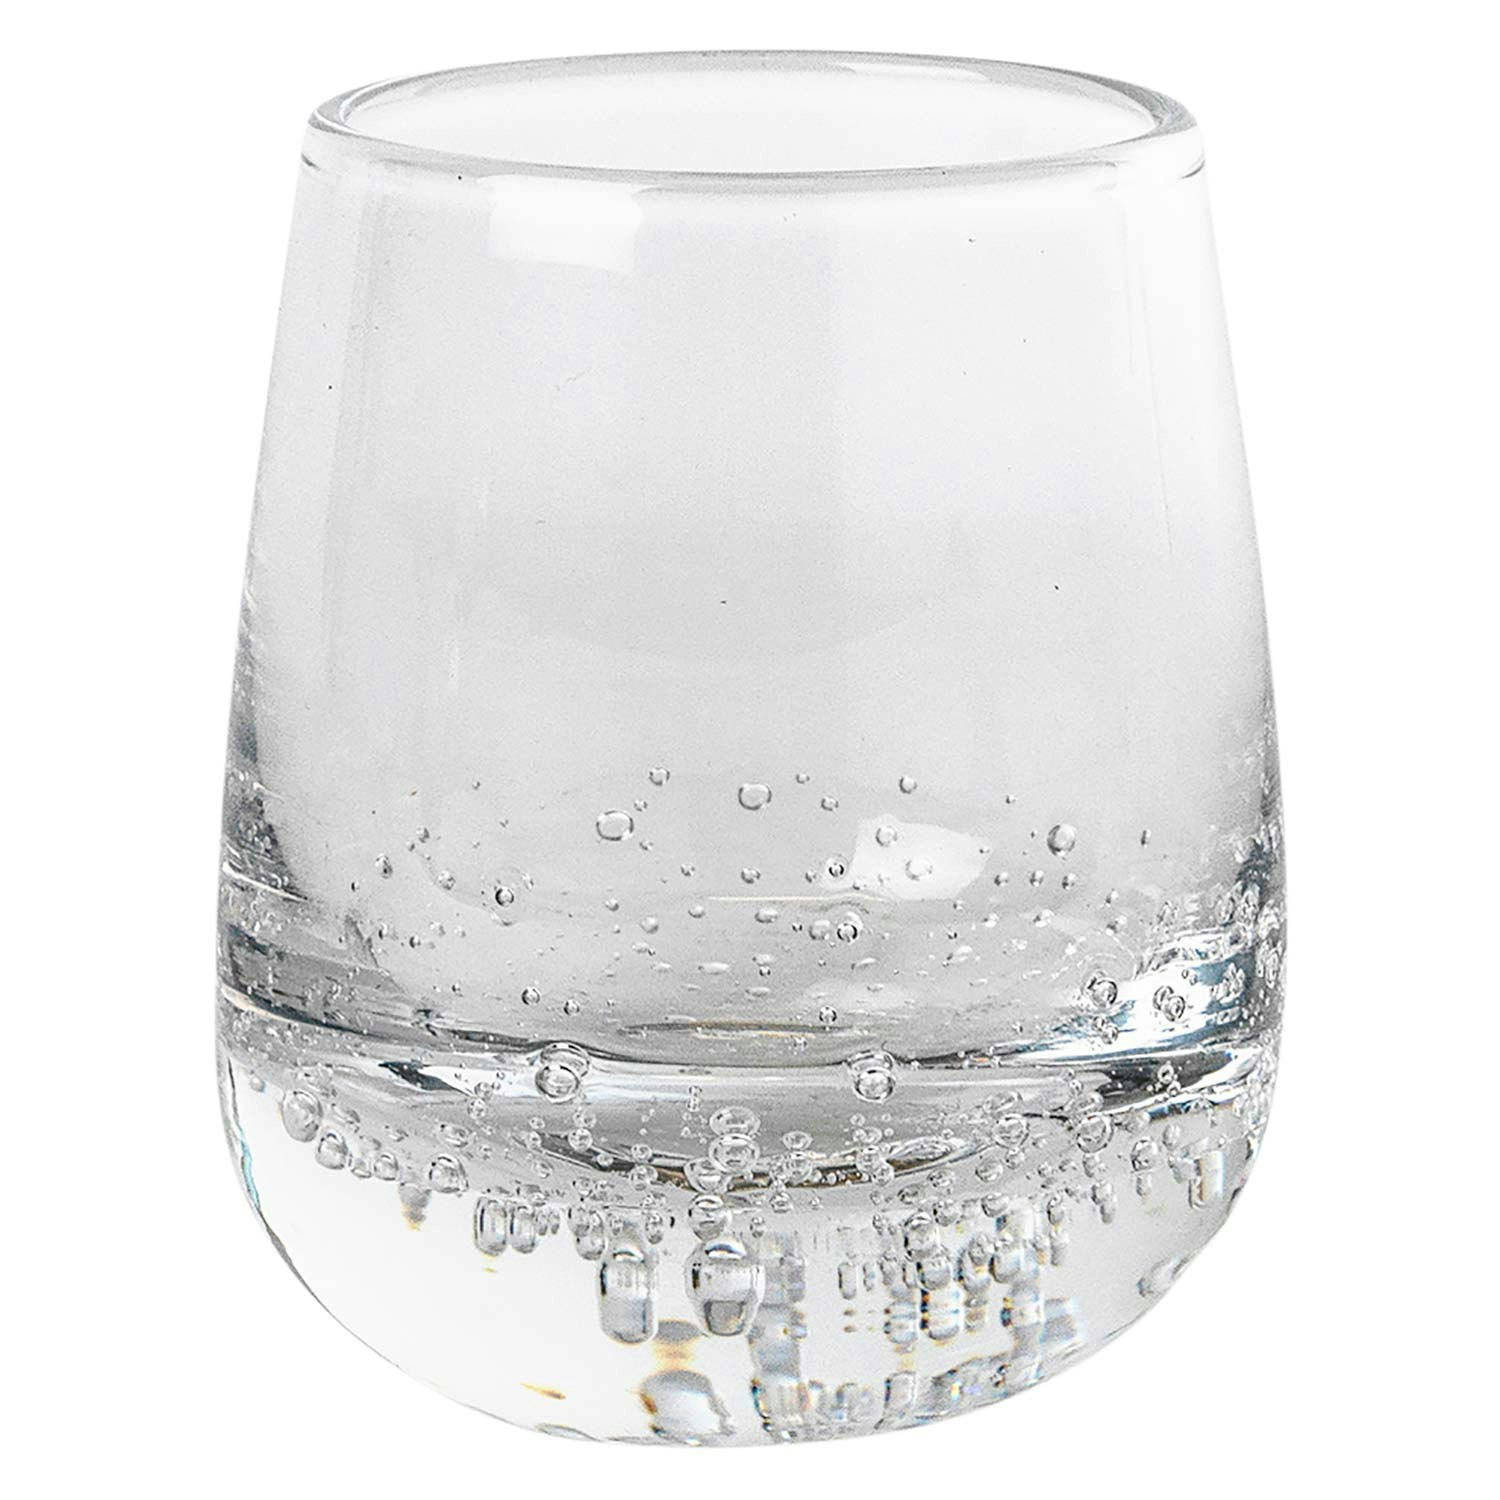 https://royaldesign.com/image/2/broste-copenhagen-bubble-shots-glass-4-cl-0